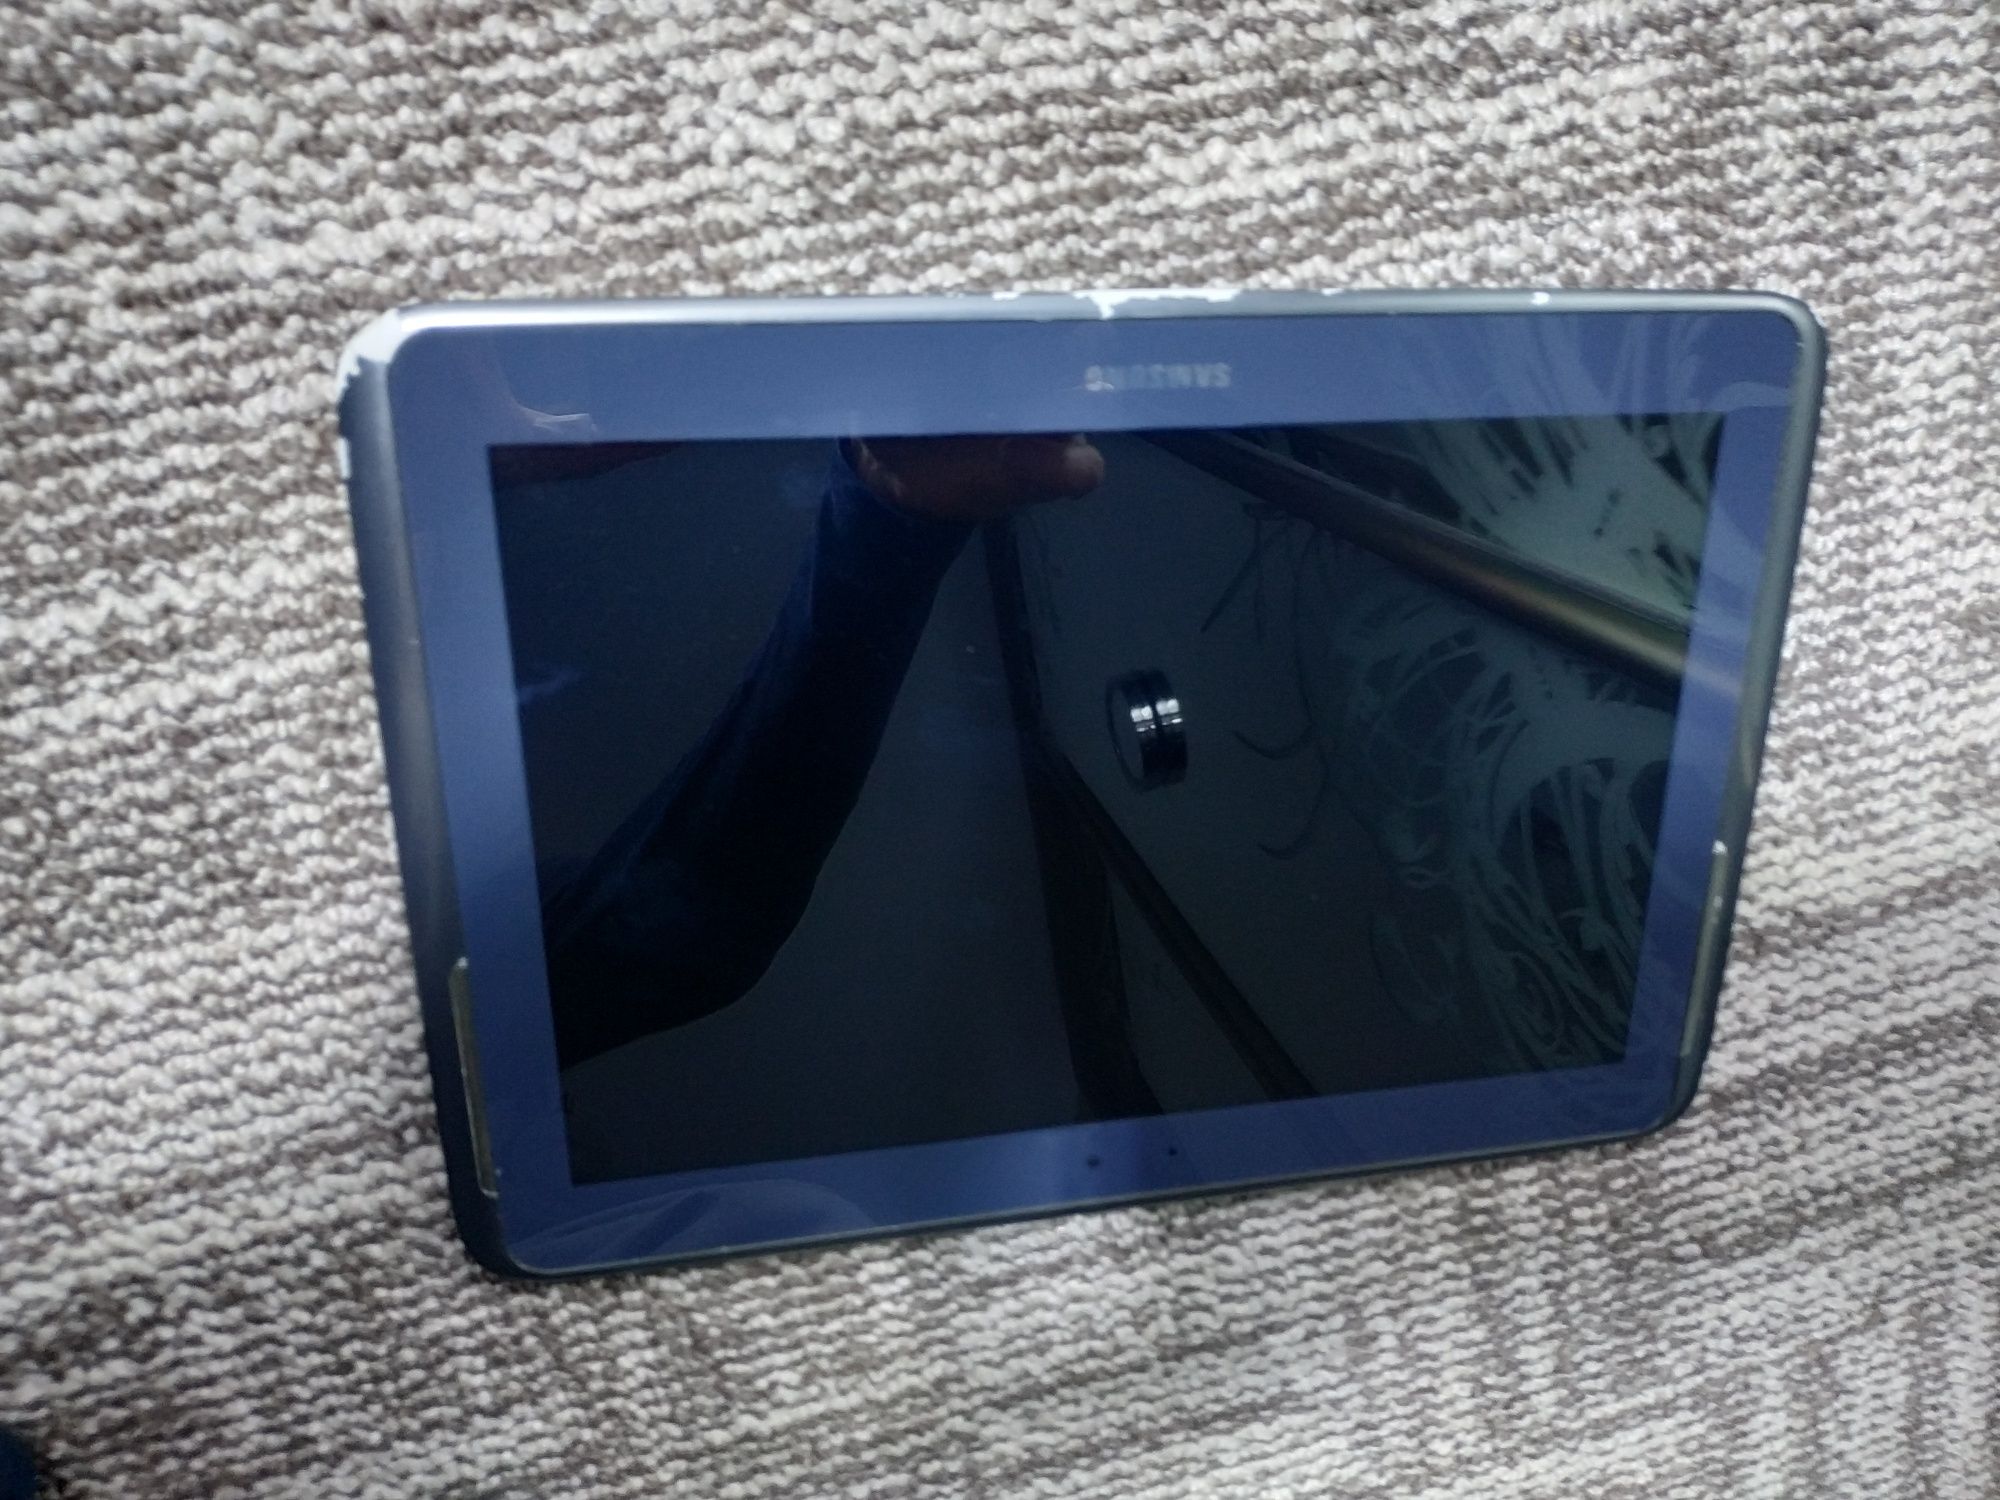 Экран в корпусе Galaxy Note 10.1 16GB (GT-N8000)